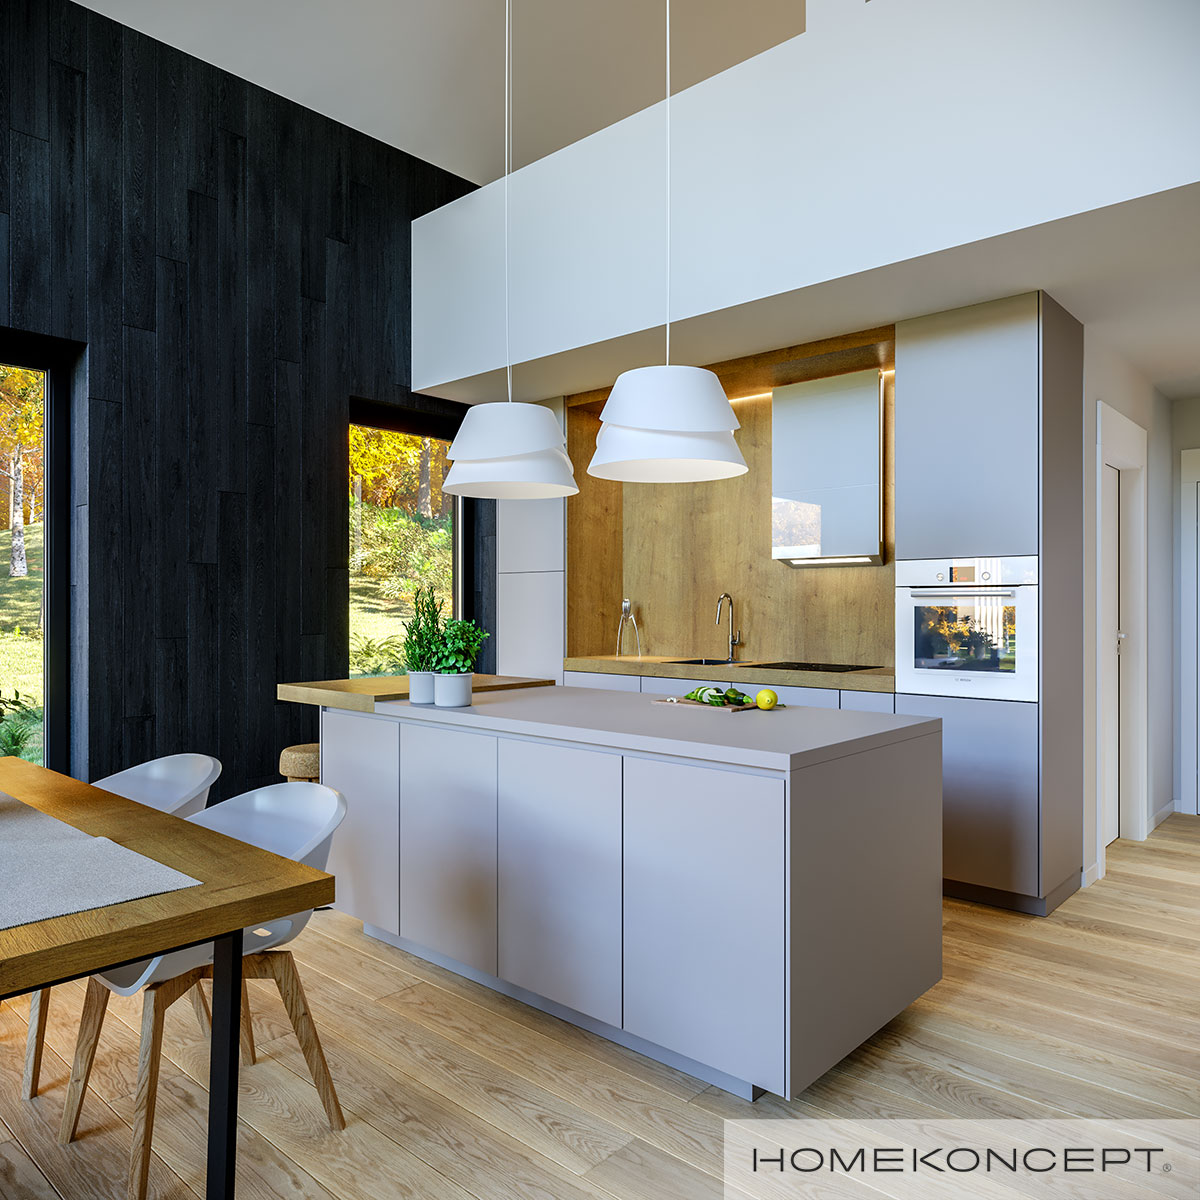 Drewno i kolory ecru to klasyka wnętrza w stylu prowansalskim - HOMEKONCEPT 67